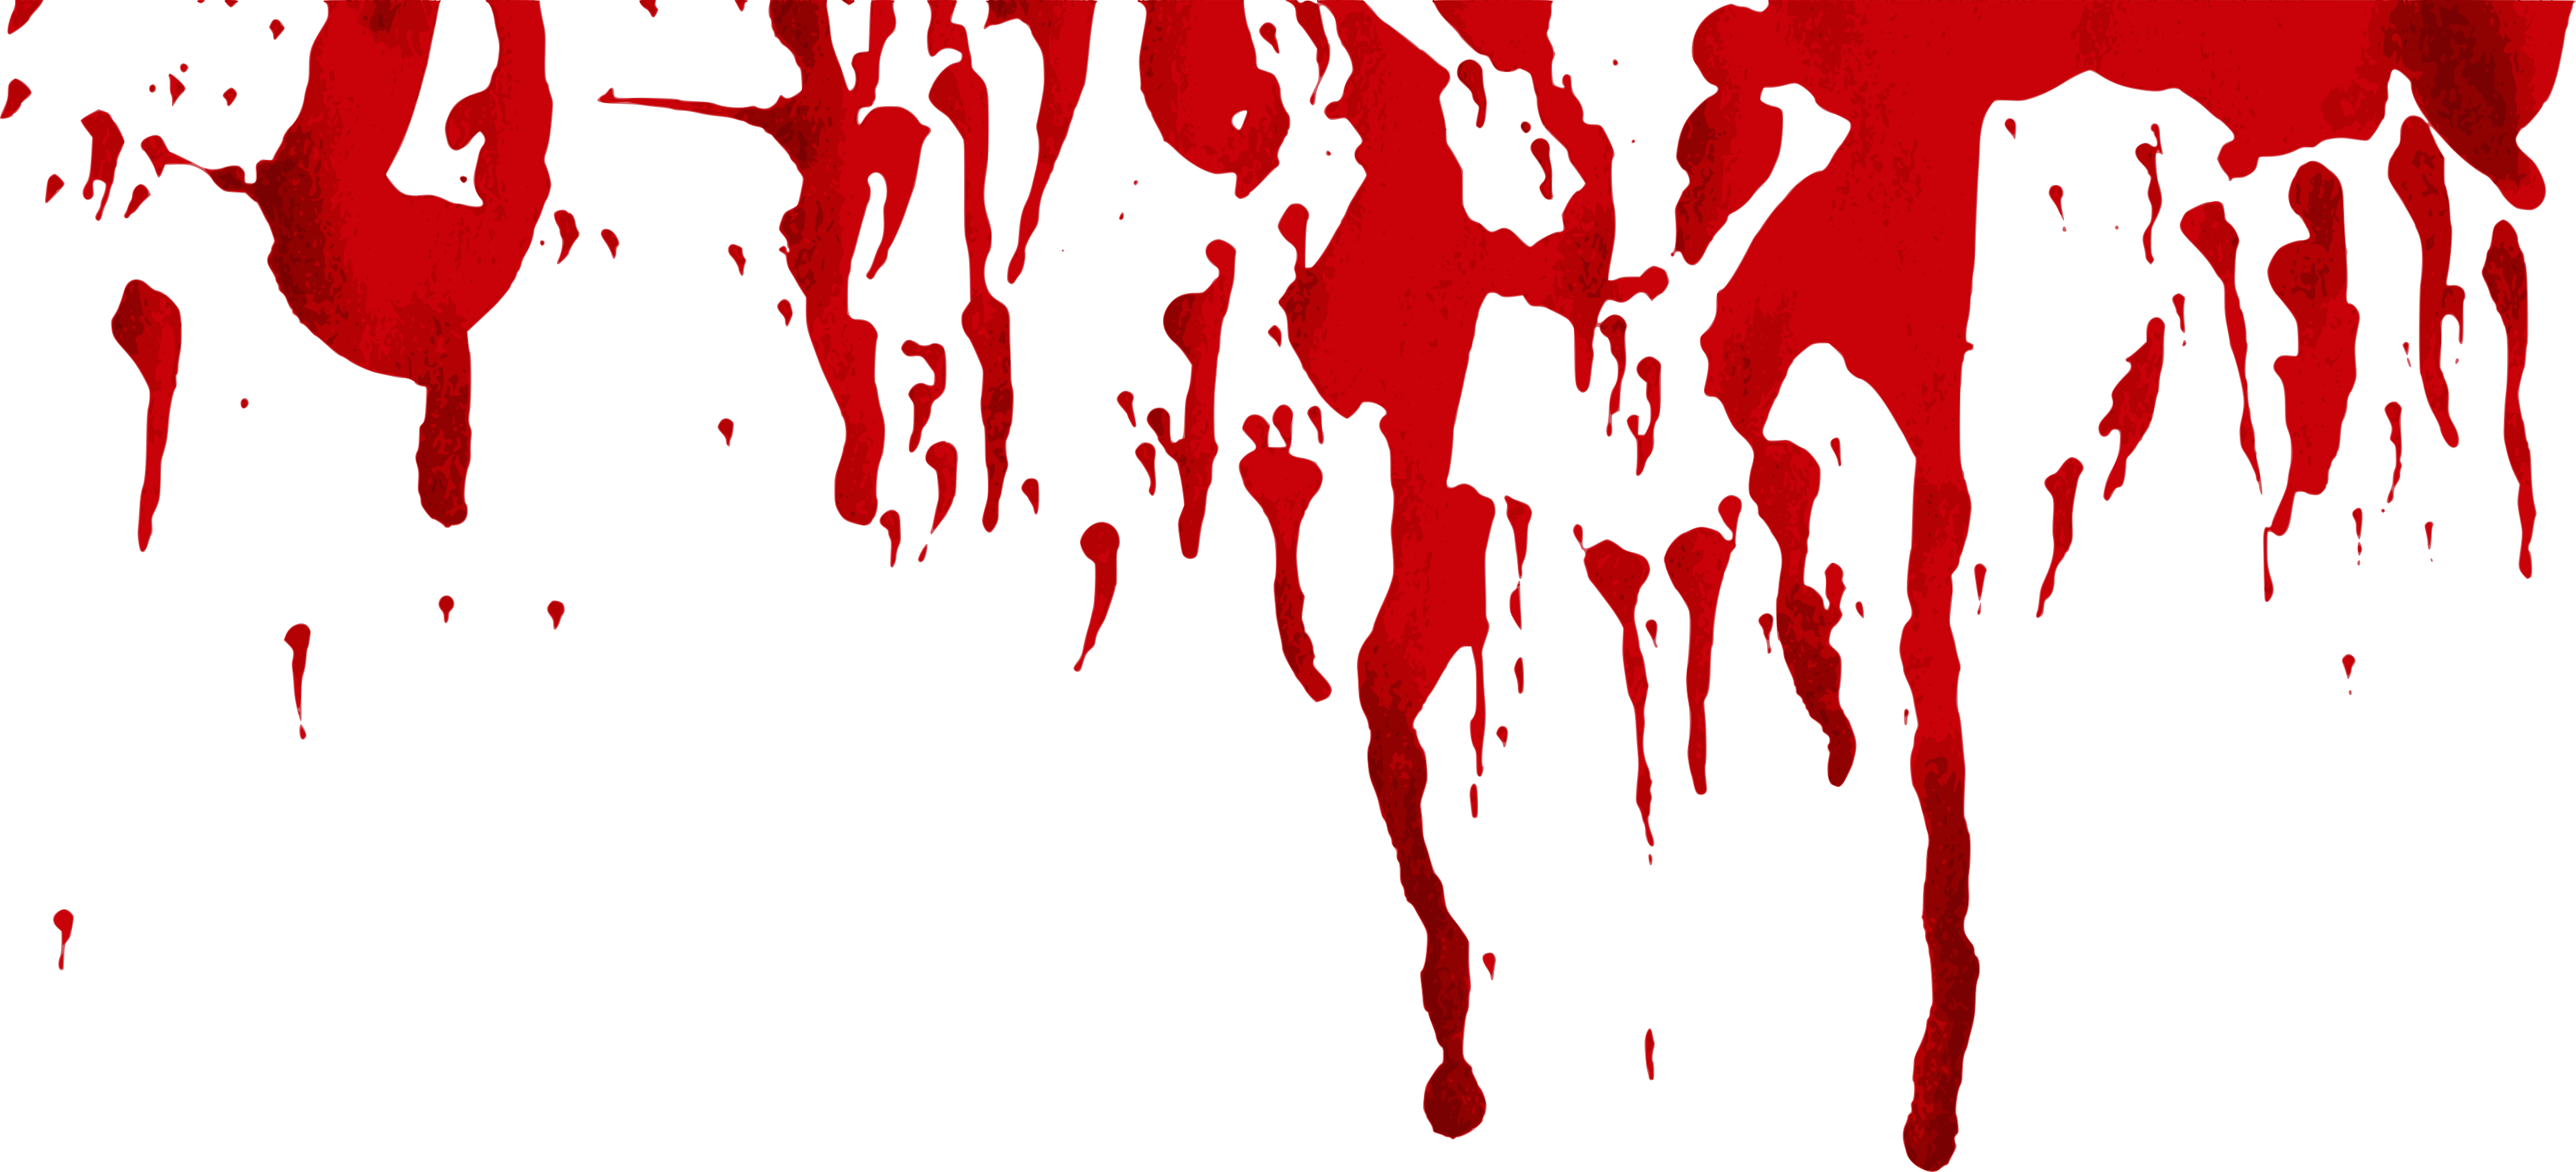 Blood Splatter Grunge Free PNG Image